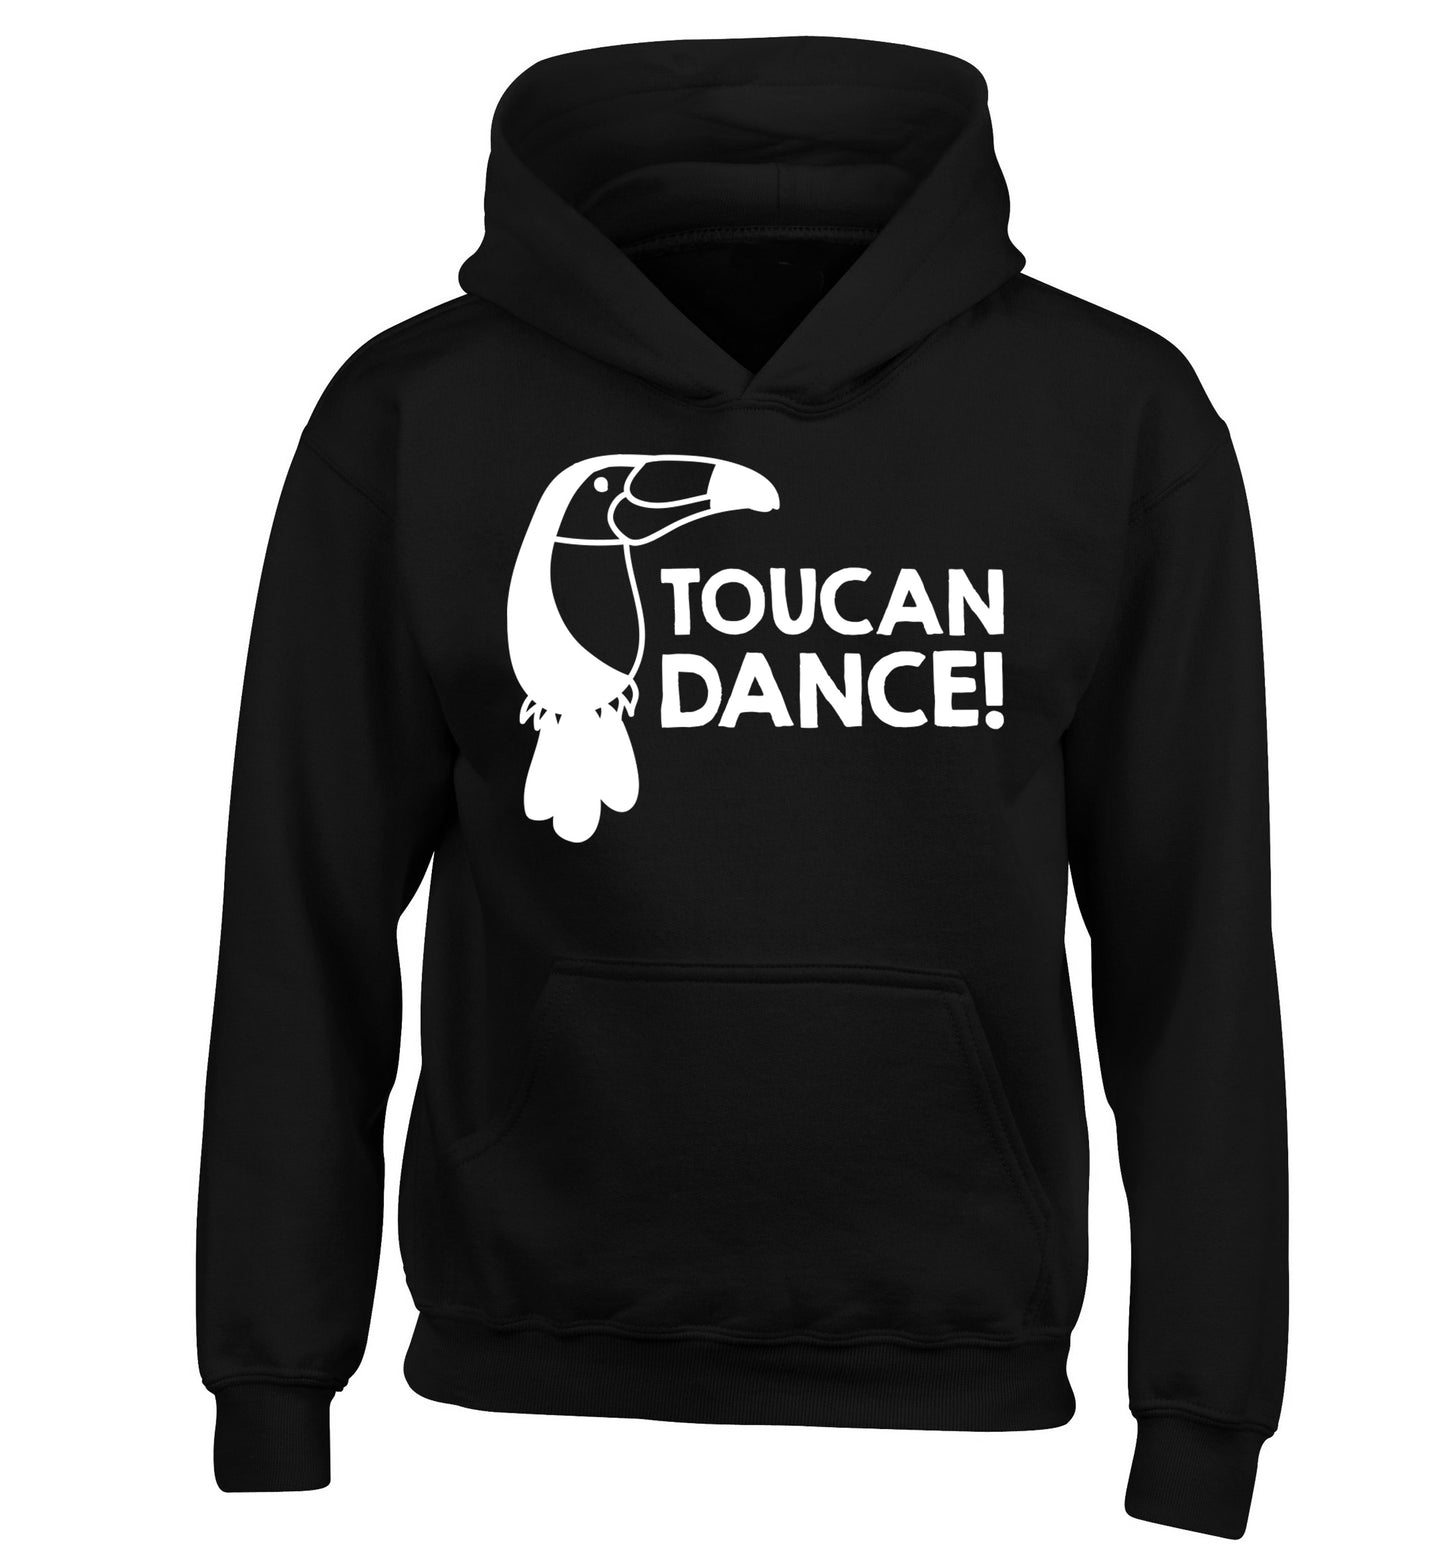 Toucan dance children's black hoodie 12-13 Years